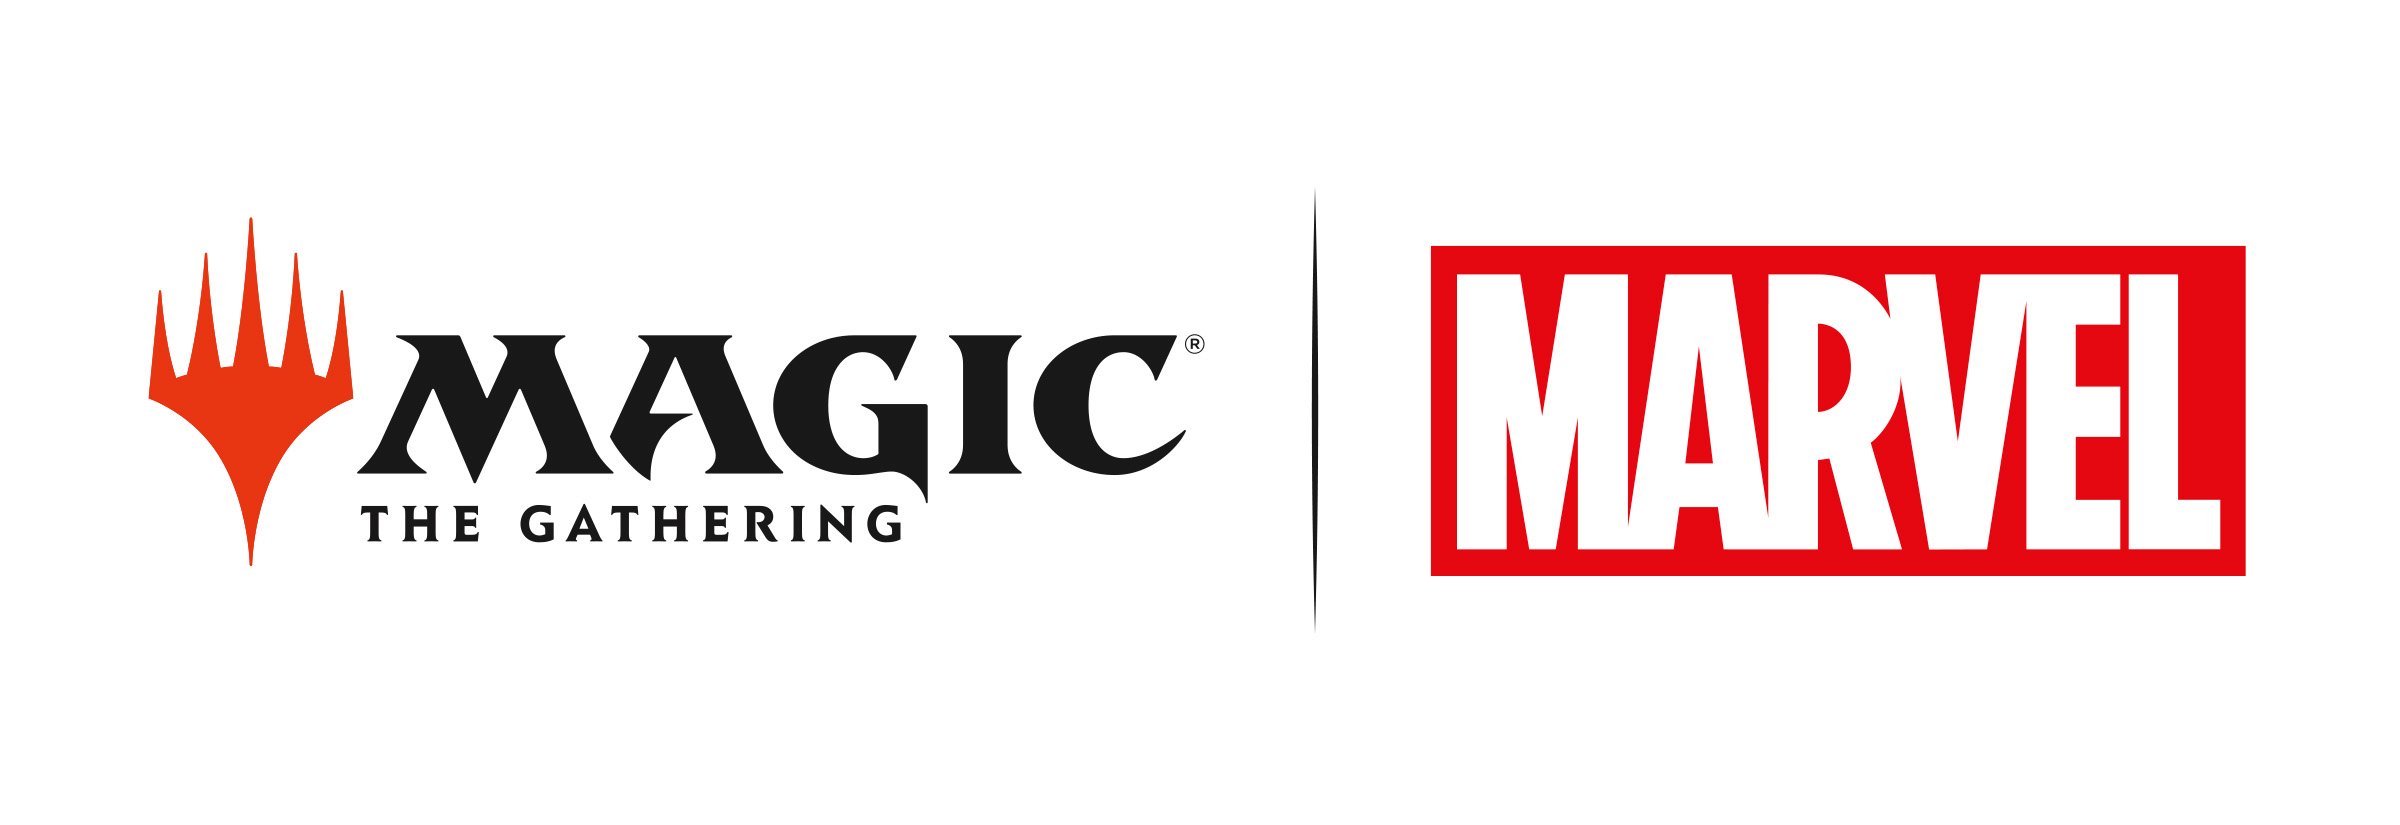 Imagen de los logotipos de MTG y Marvel juntos a través del crossover Universes Beyond